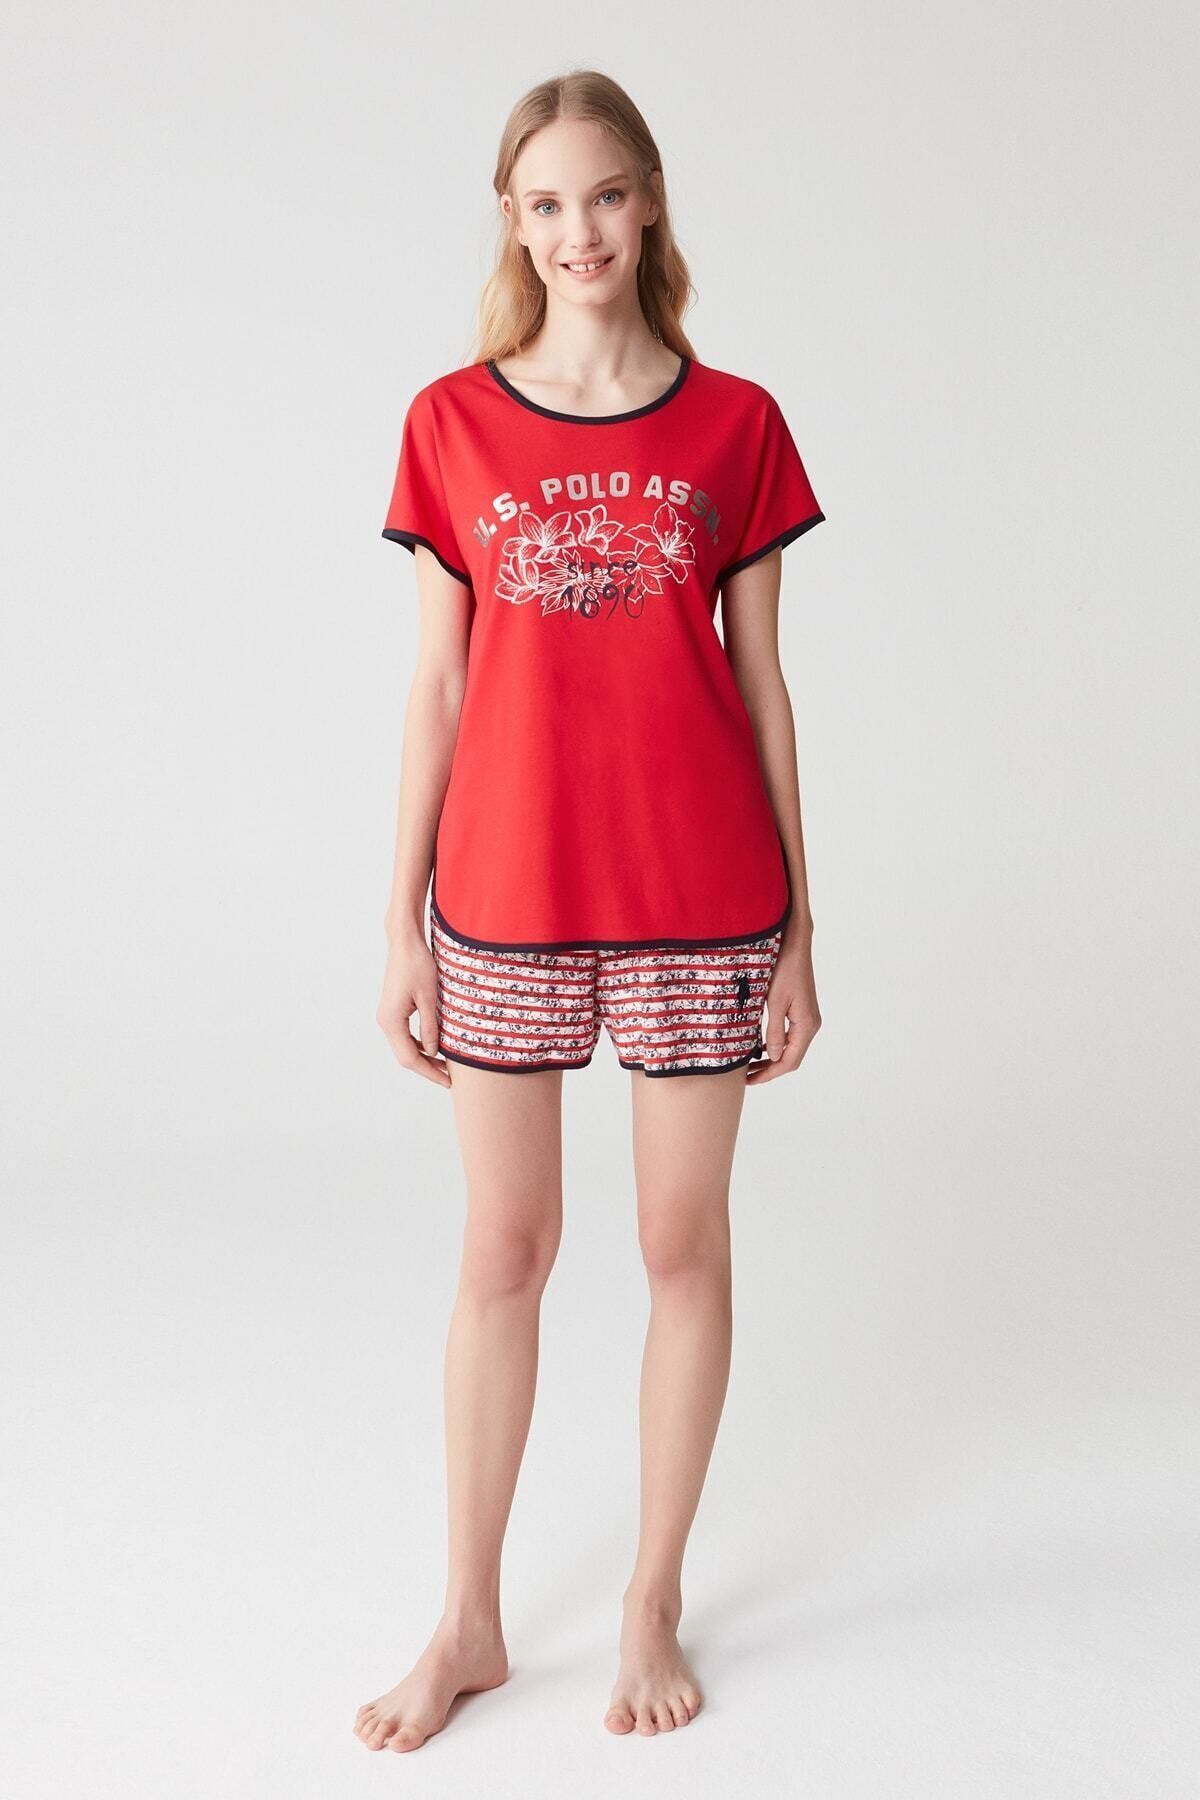 U.S. Polo Assn. Kadın Kırmızı T-shirt Şort Takım